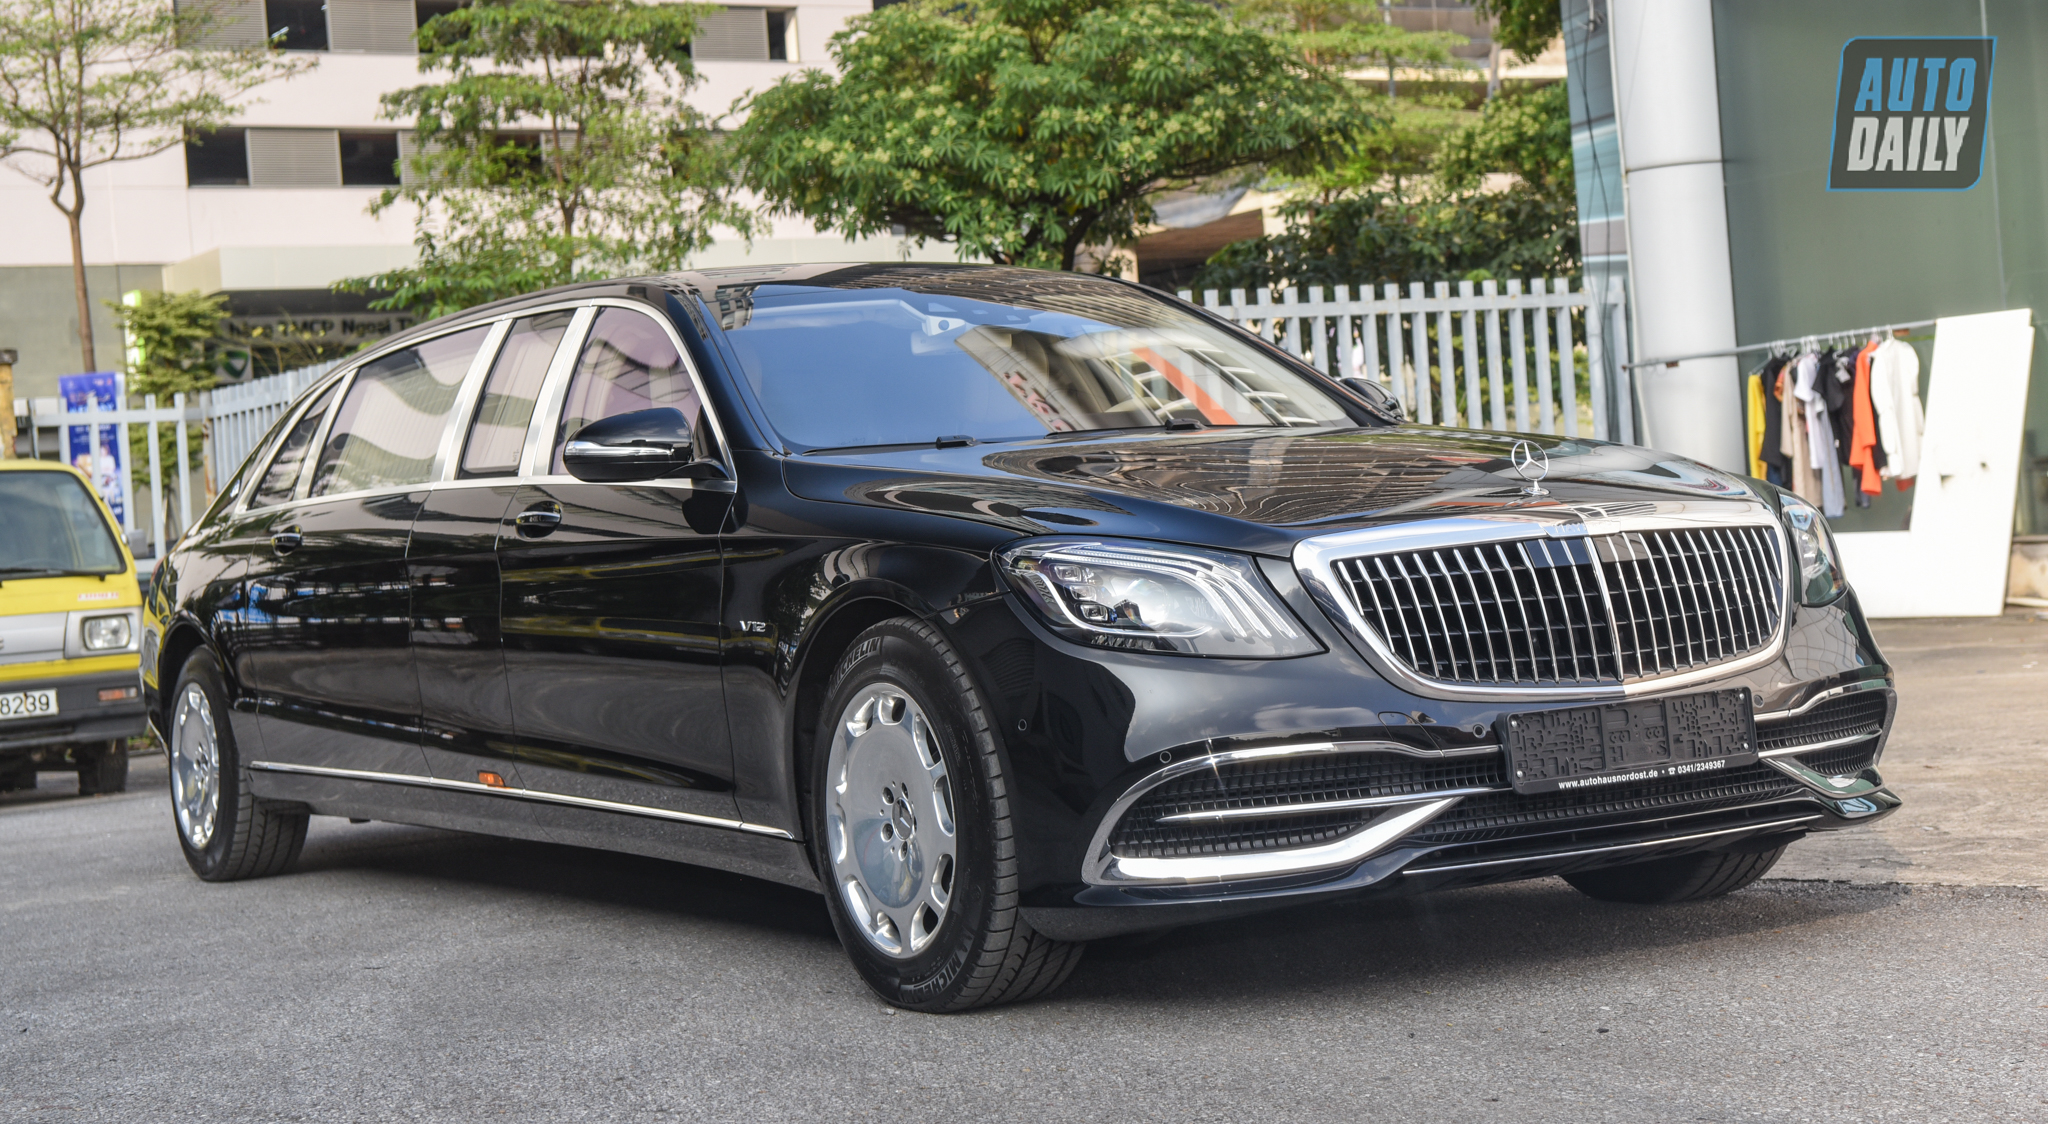 Limousine siêu sang cho 'Chủ tịch' Mercedes-Maybach S650 Pullman đẳng cấp cỡ nào? dsc-0975.jpg